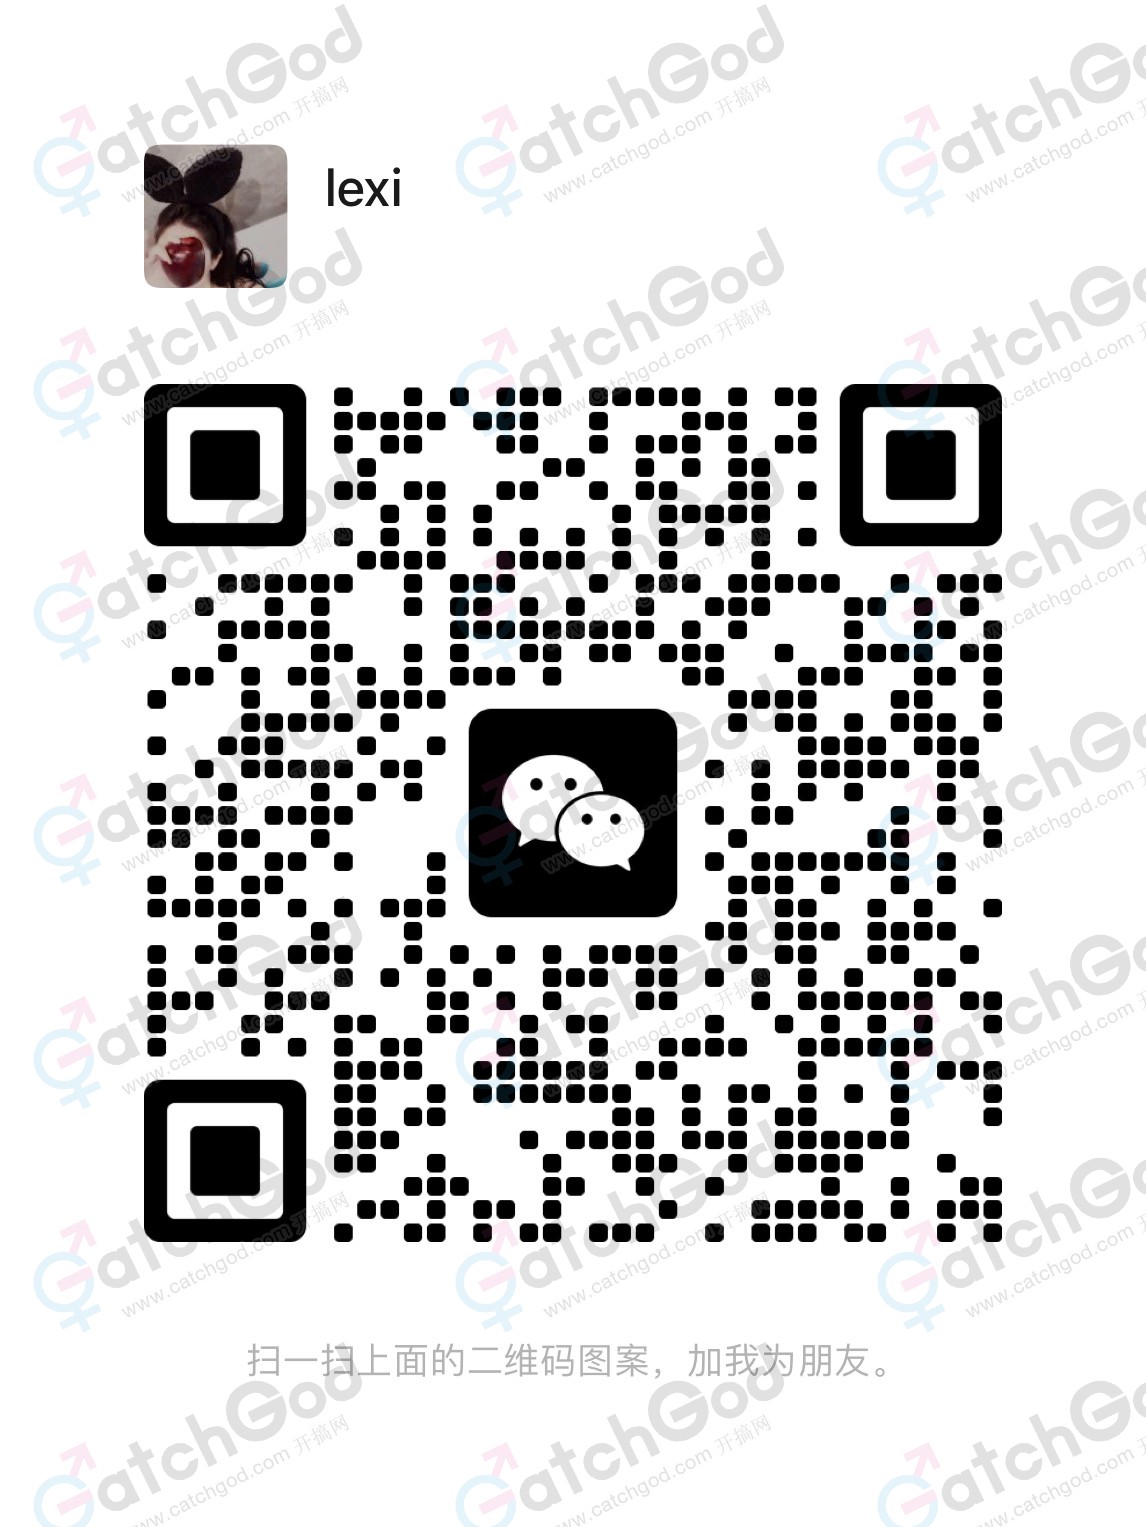 WeChat Image_20221027212639.jpg